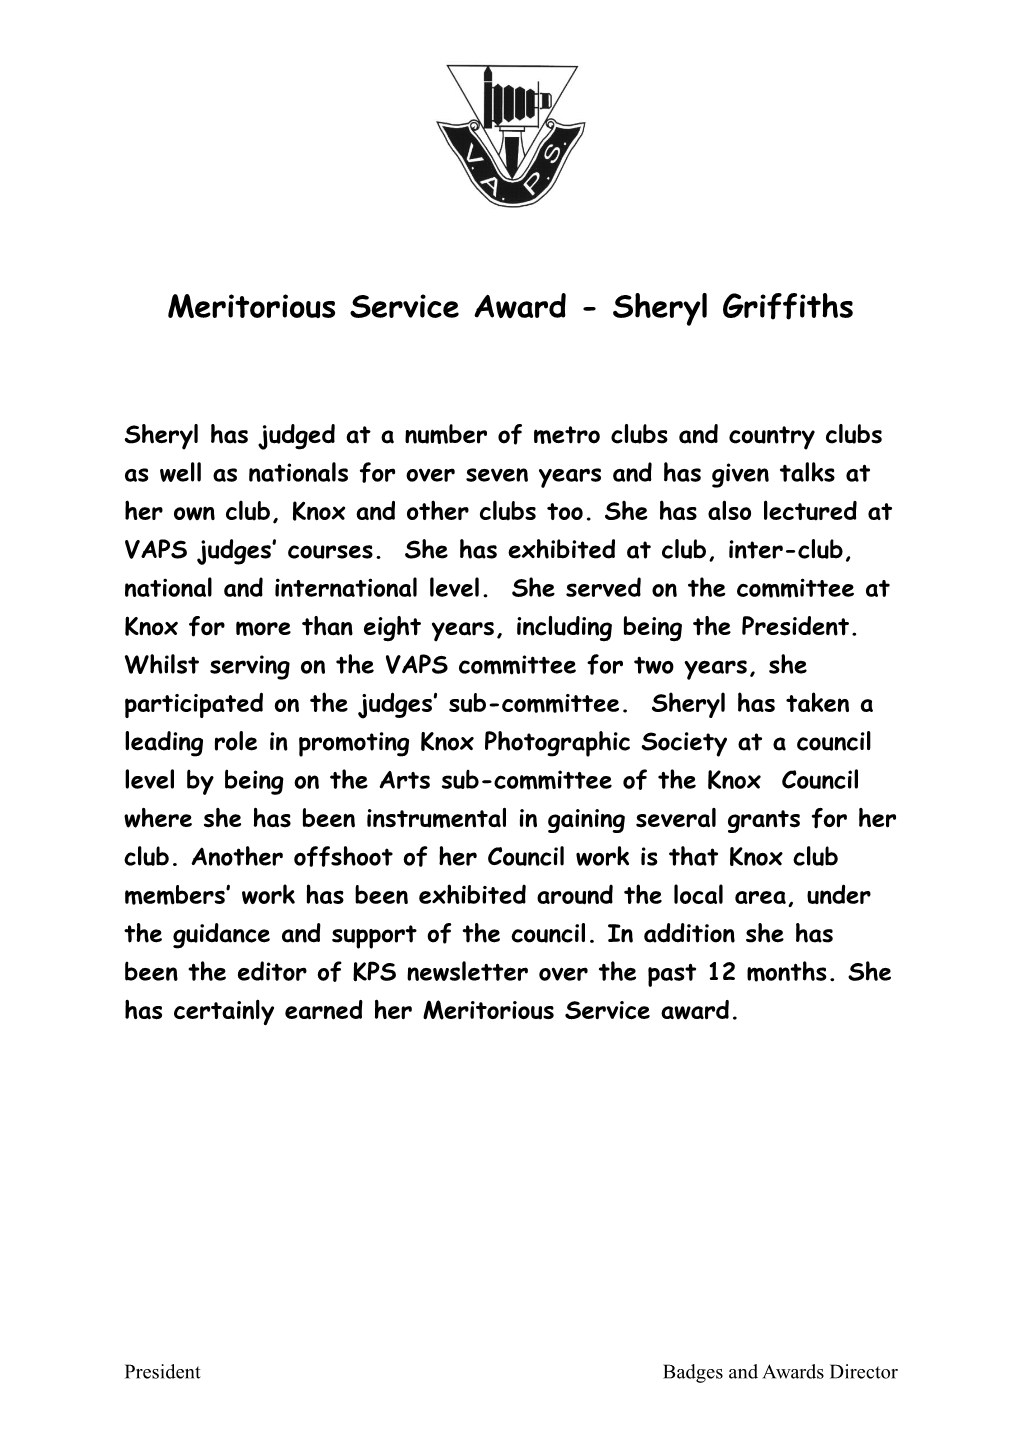 Meritorious Service Award - Brian Cohn